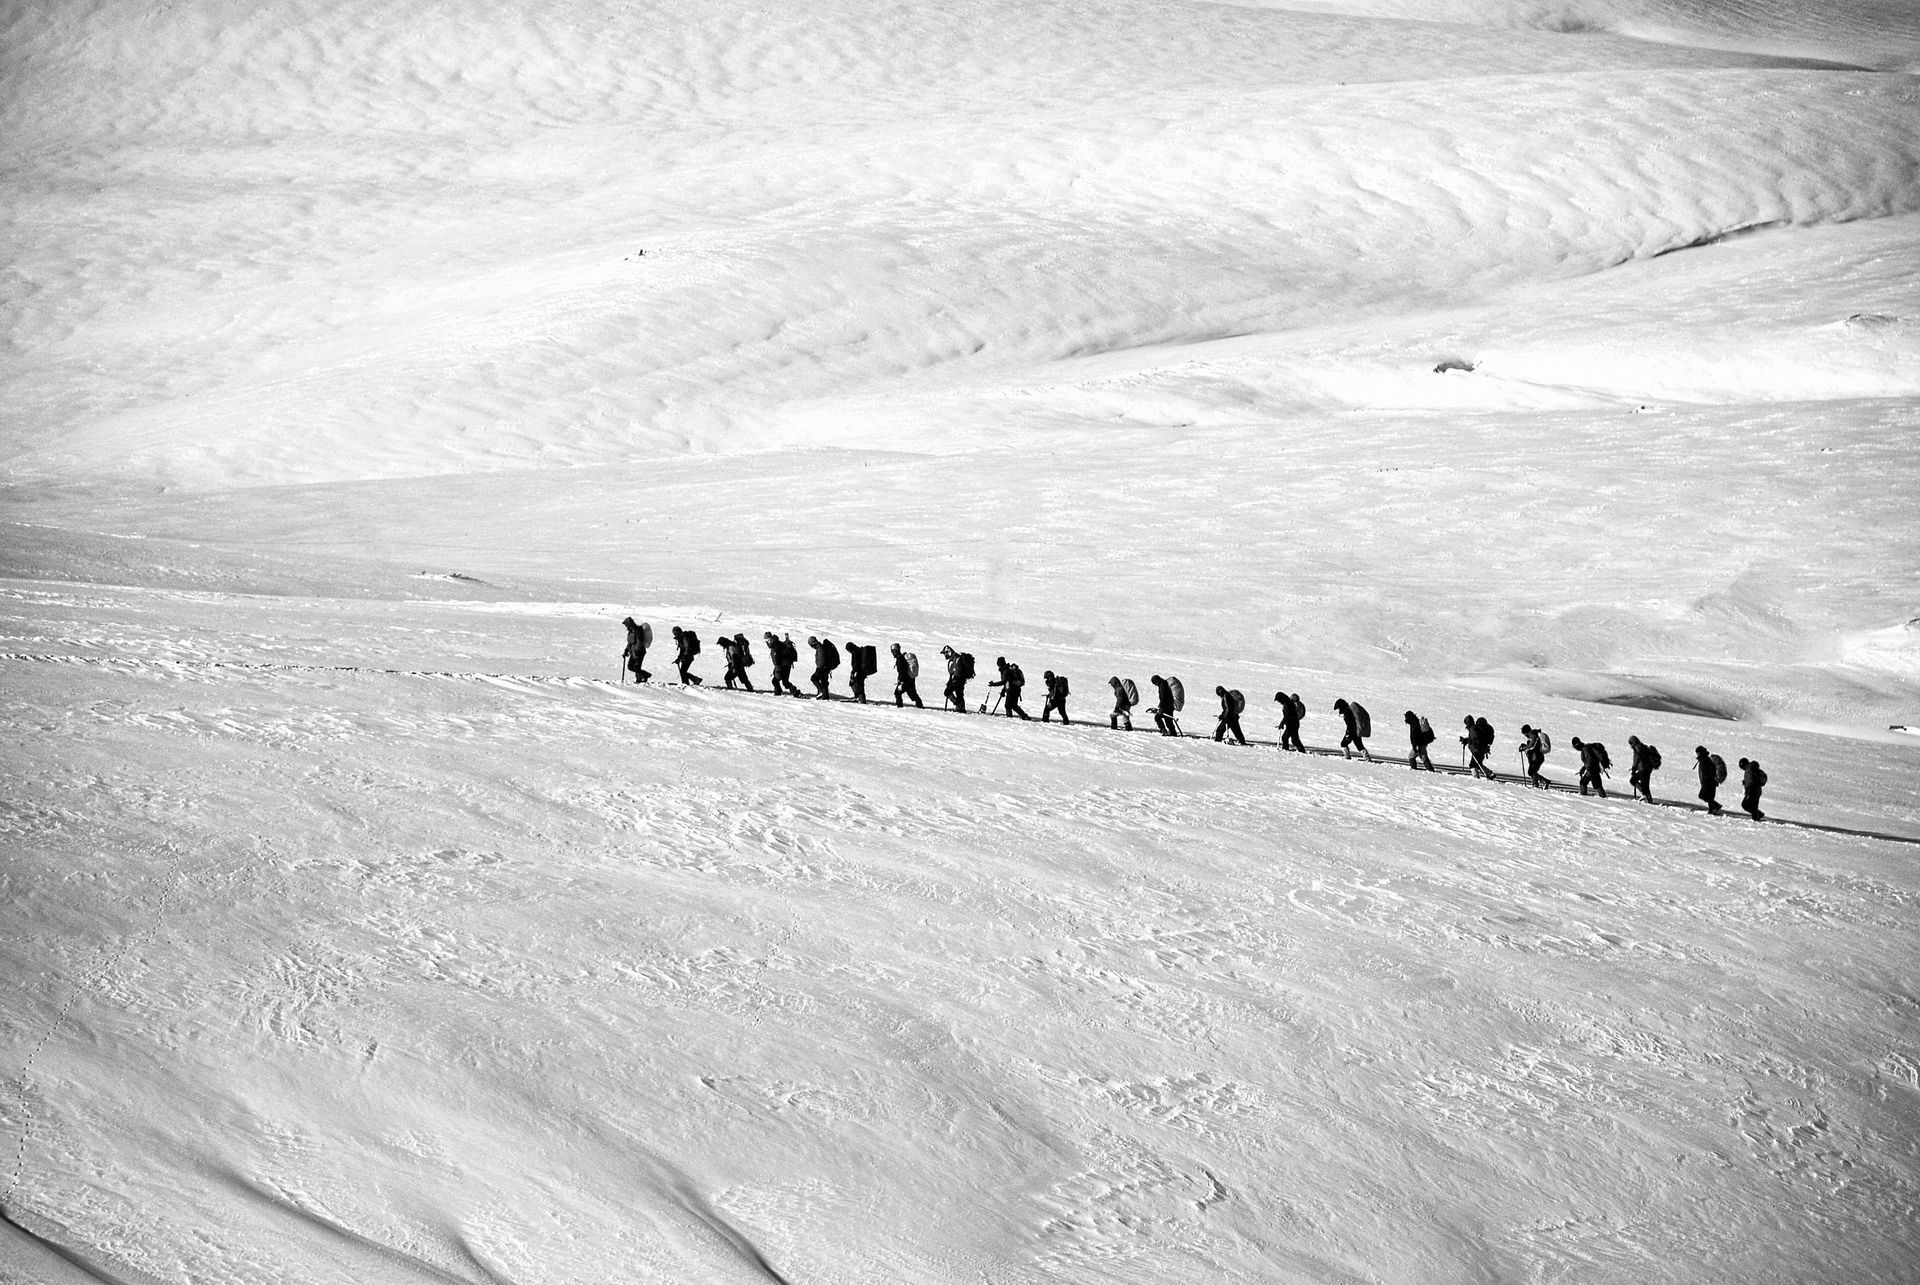 Zielgruppe suchen gleicht einer Karawane im Schnee